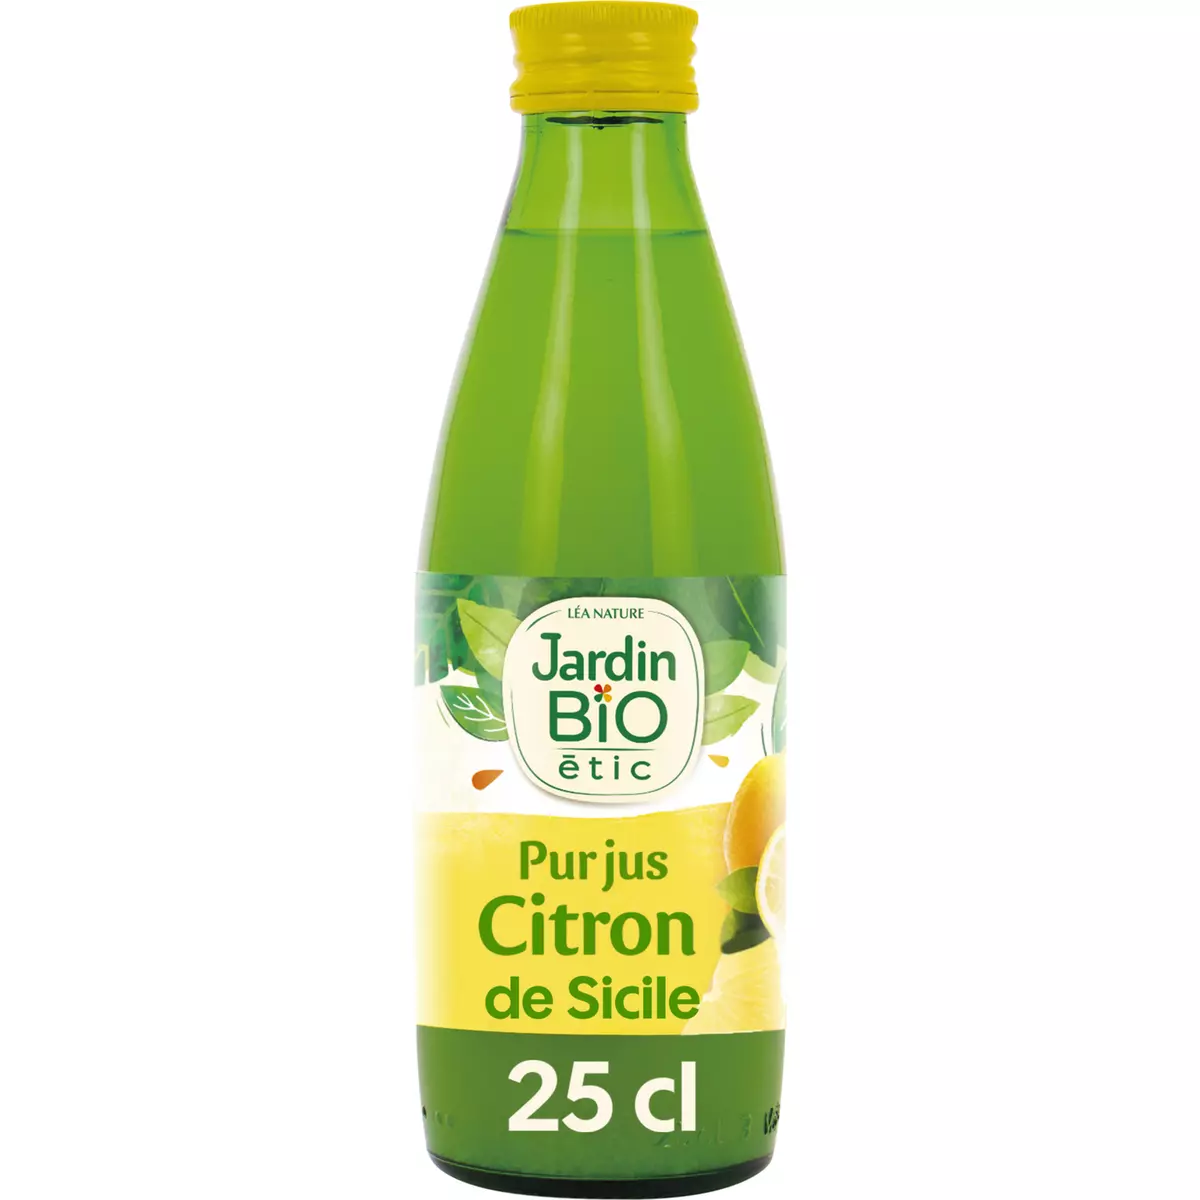 JARDIN BIO ETIC Pur jus de citron origine Sicile 25cl